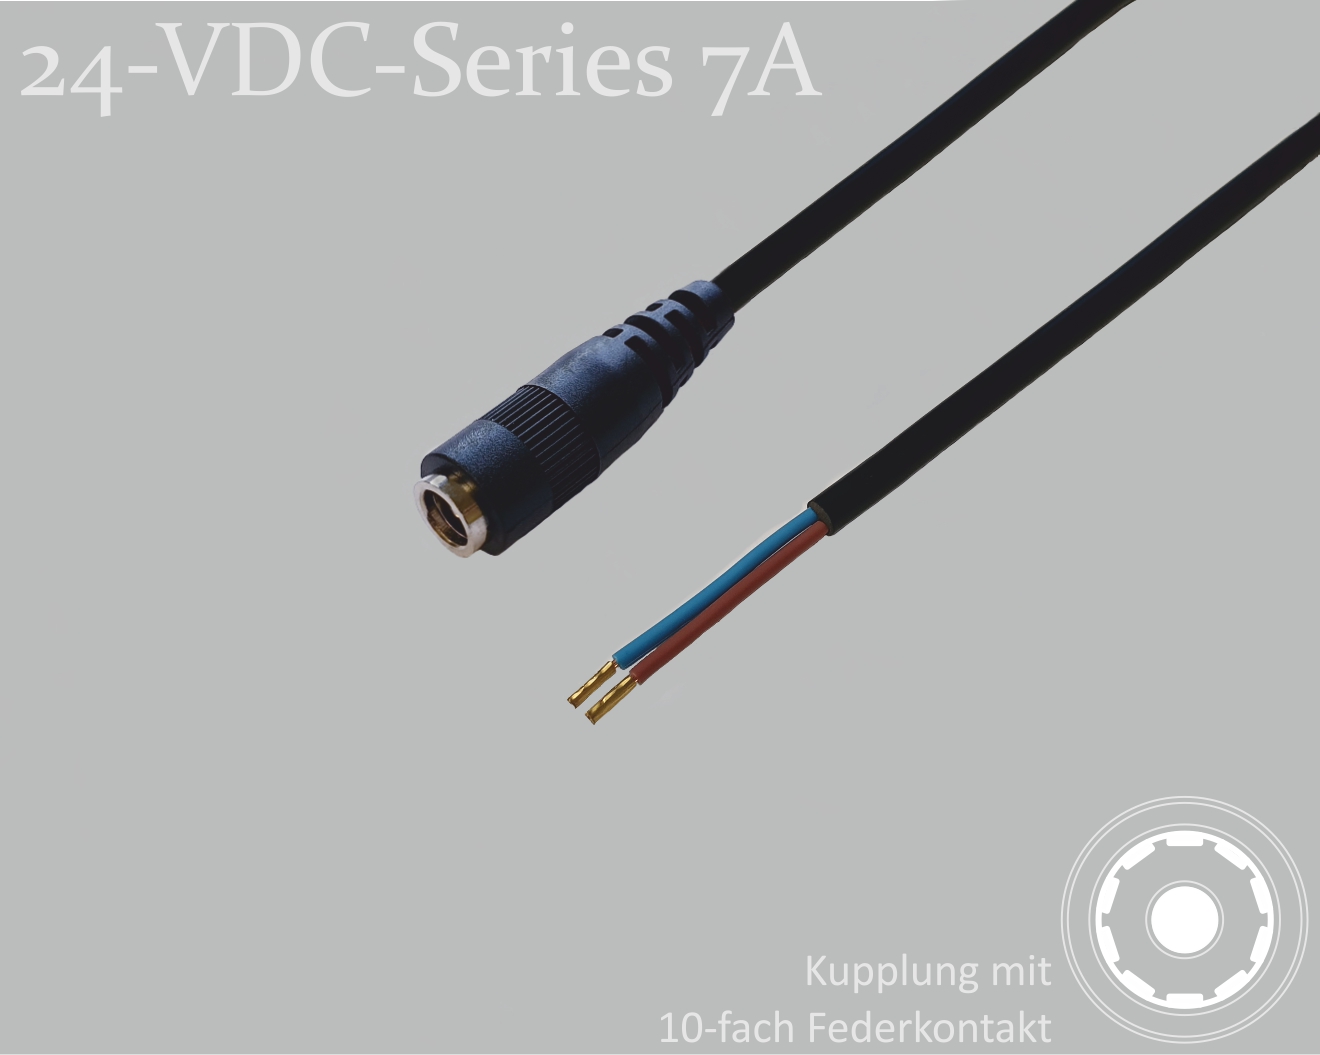 24-VDC-Series 7A, DC-Anschlusskabel, DC-Kupplung mit 10-Federkontakt 2,5x5,5mm, Rundkabel 2x0,50mm², schwarz, Aderendhülsen, 0,75m